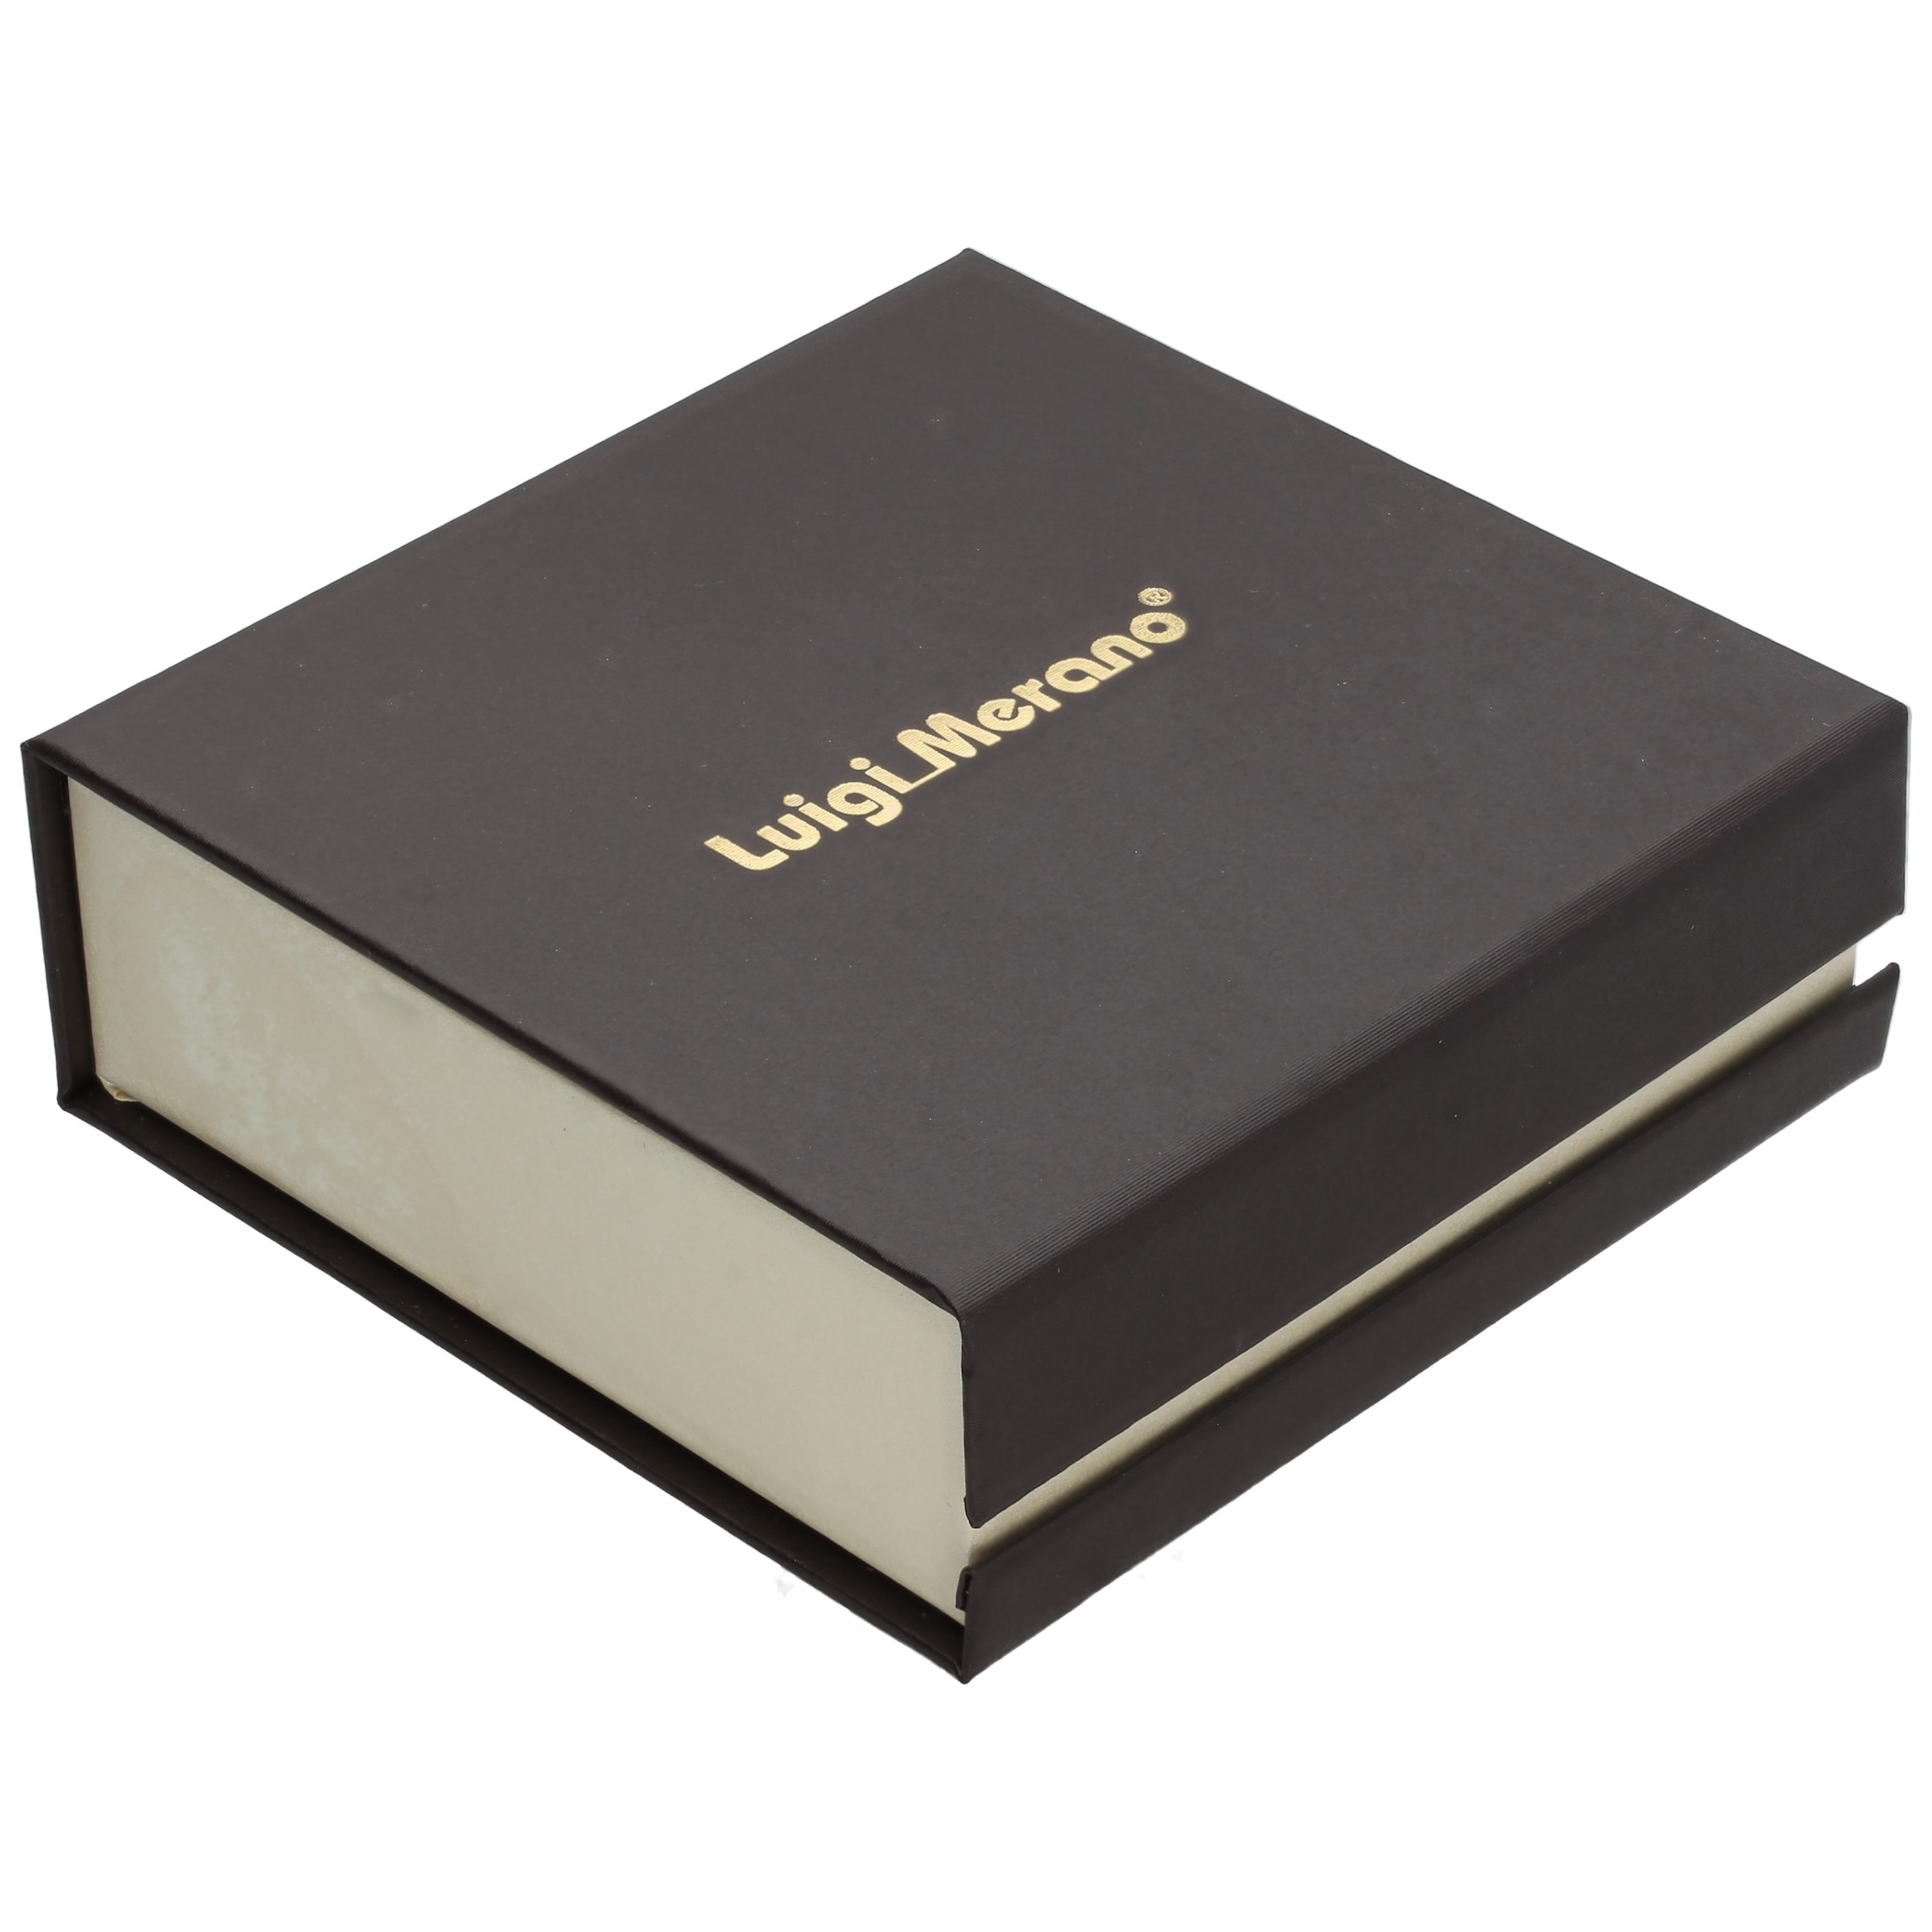 Luigi Merano Goldkette »Kette mit einem kleinen Kreuz, Gold 375« kaufen |  UNIVERSAL